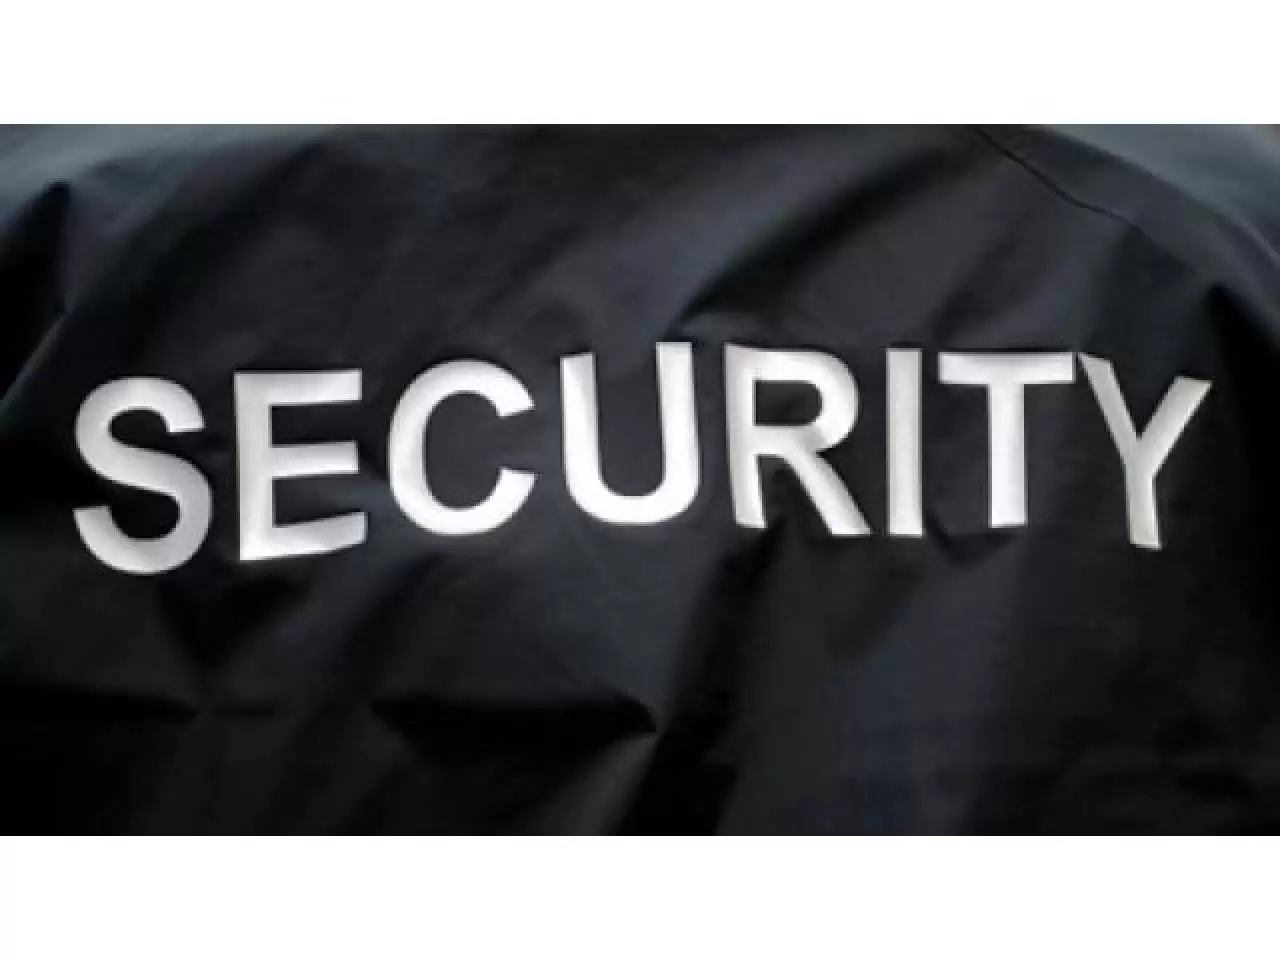 Security Company требуются мужчины и женщины на работу охранником,обучаем,помогаем получить лицензию - 1